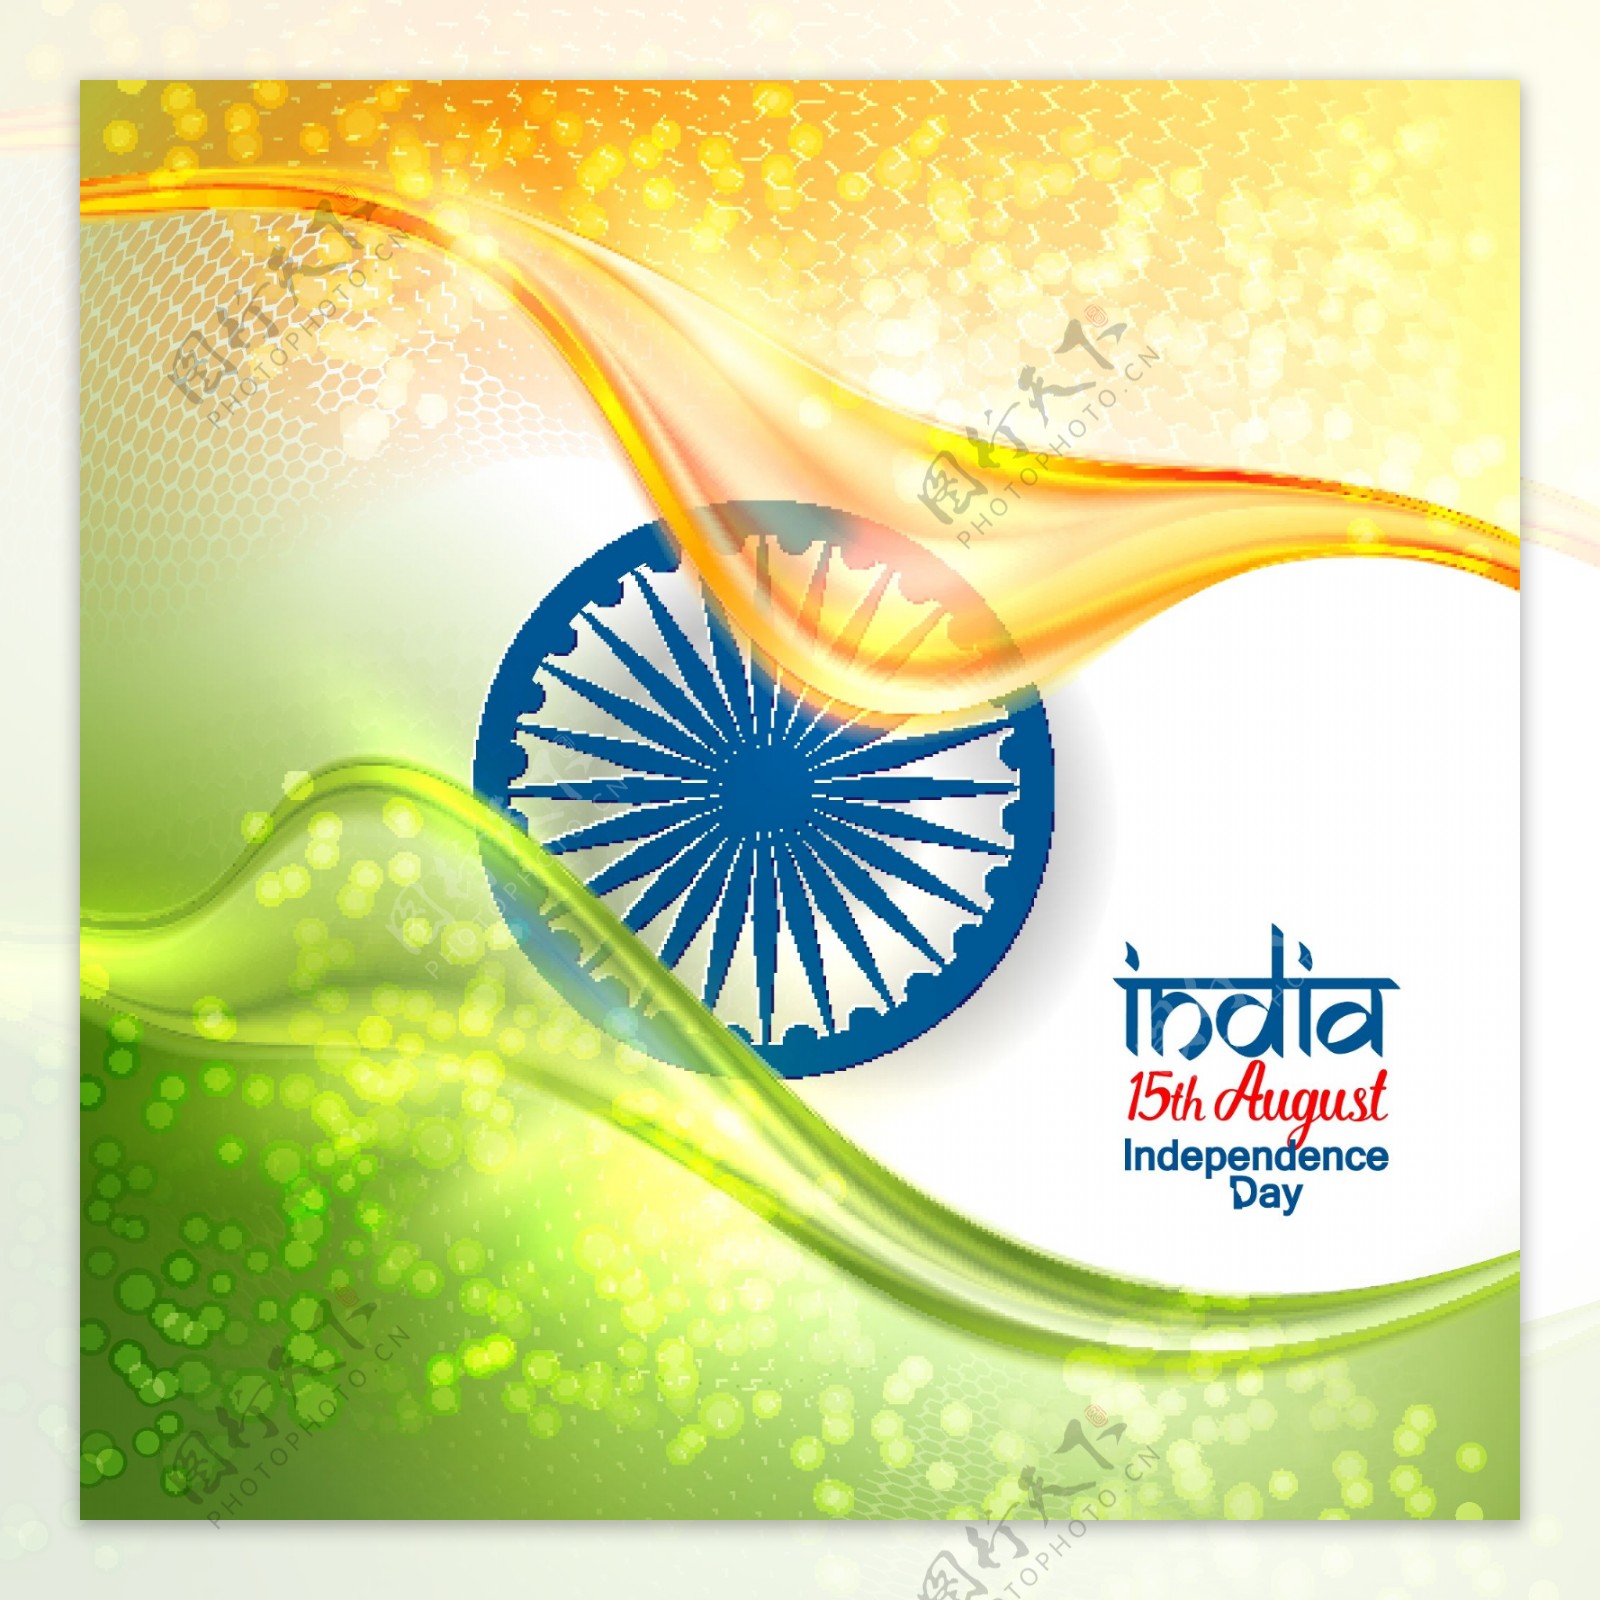 印度独立日庆祝海报背景矢量素材下载